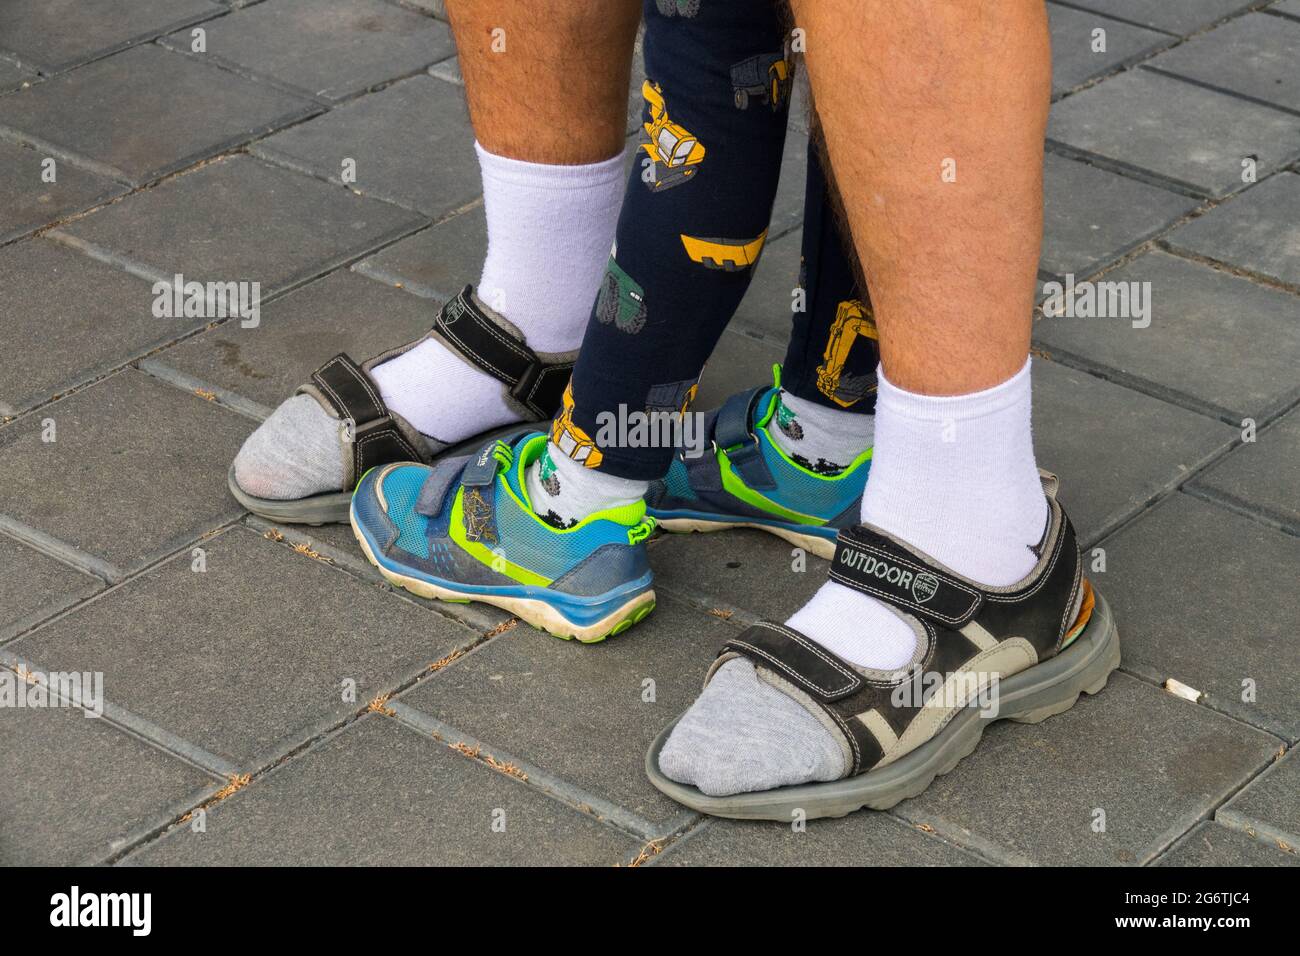 Chaussettes homme senior en sandales et baskets enfant Photo Stock - Alamy